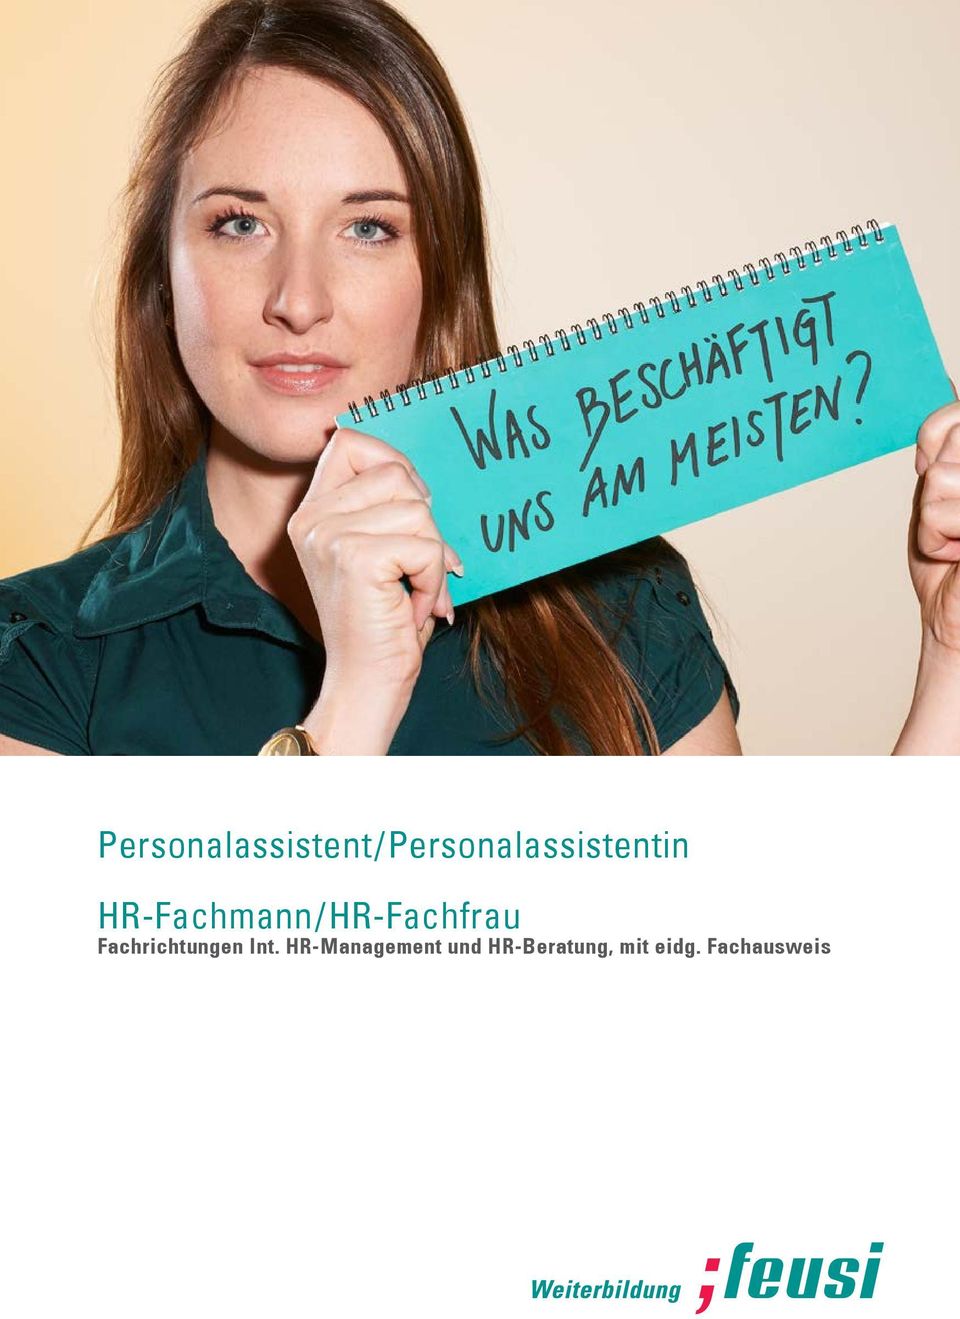 HR-Fachfrau Fachrichtungen Int.